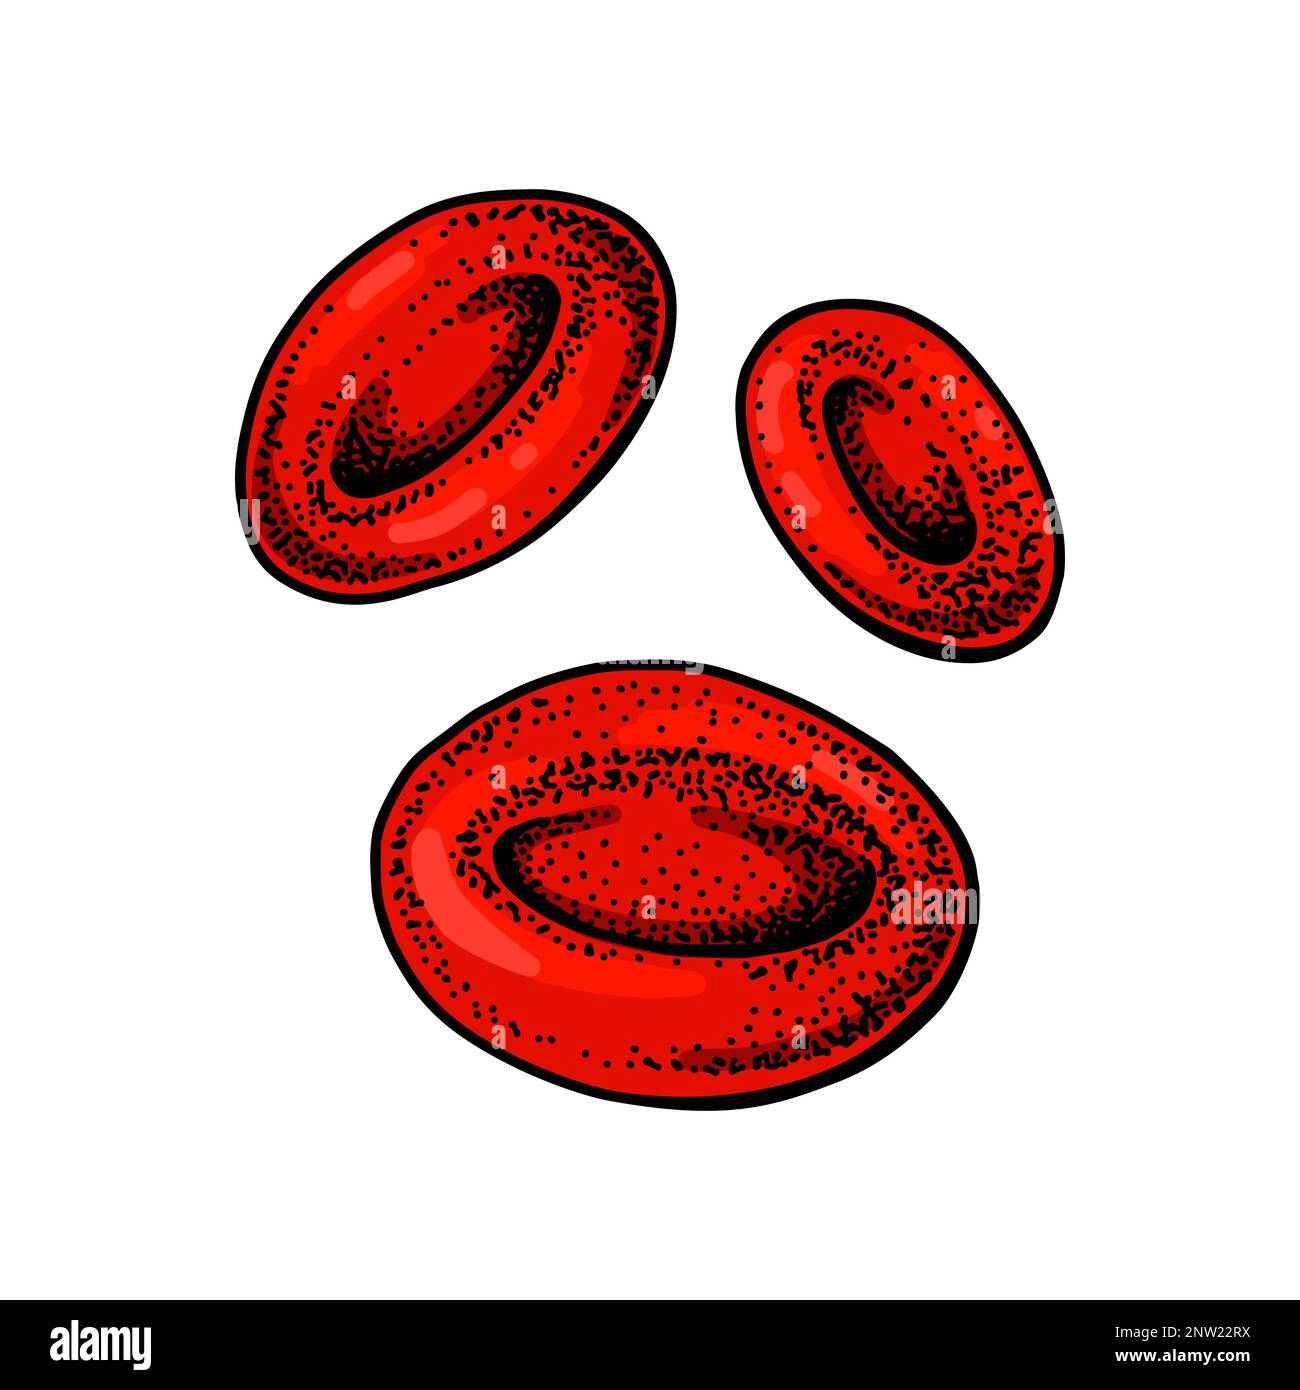 Erythrozytenrote Blutkörperchen auf weißem Hintergrund isoliert. Handgezeichnete mikrobiologische Vektordarstellung im Skizzenstil Stock Vektor